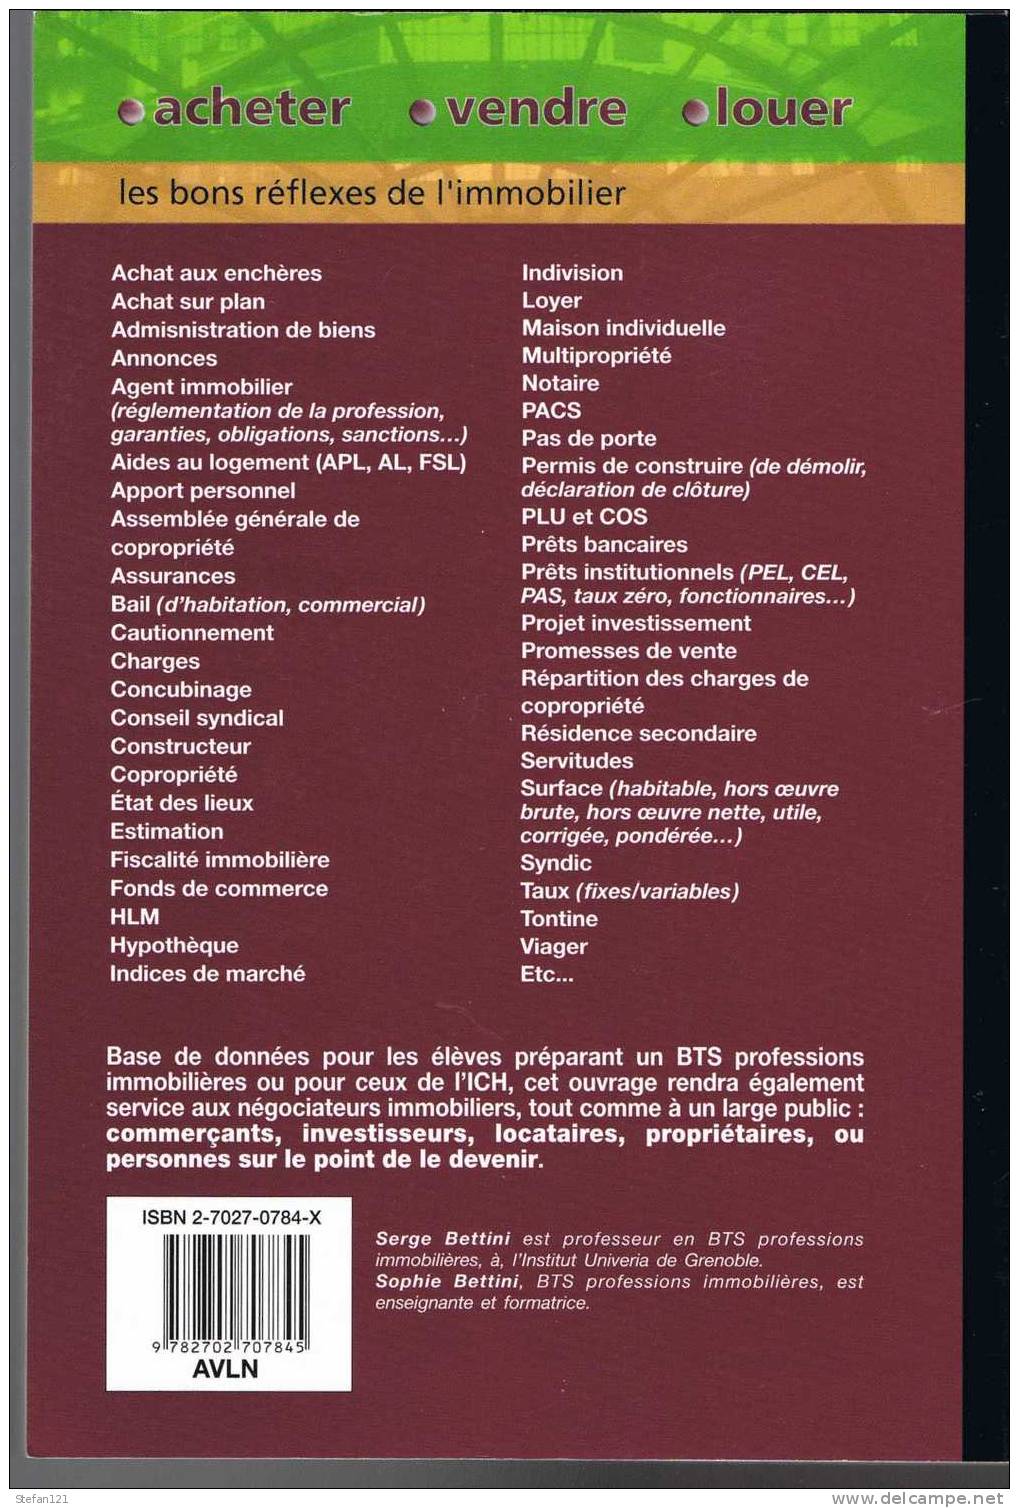 Acheter, Vendre, Louer - Sophie Et Serge Bettini - 2003 - Editeur Chiron - 288 Pages - 24 Cm X 17 Cm -- - Droit